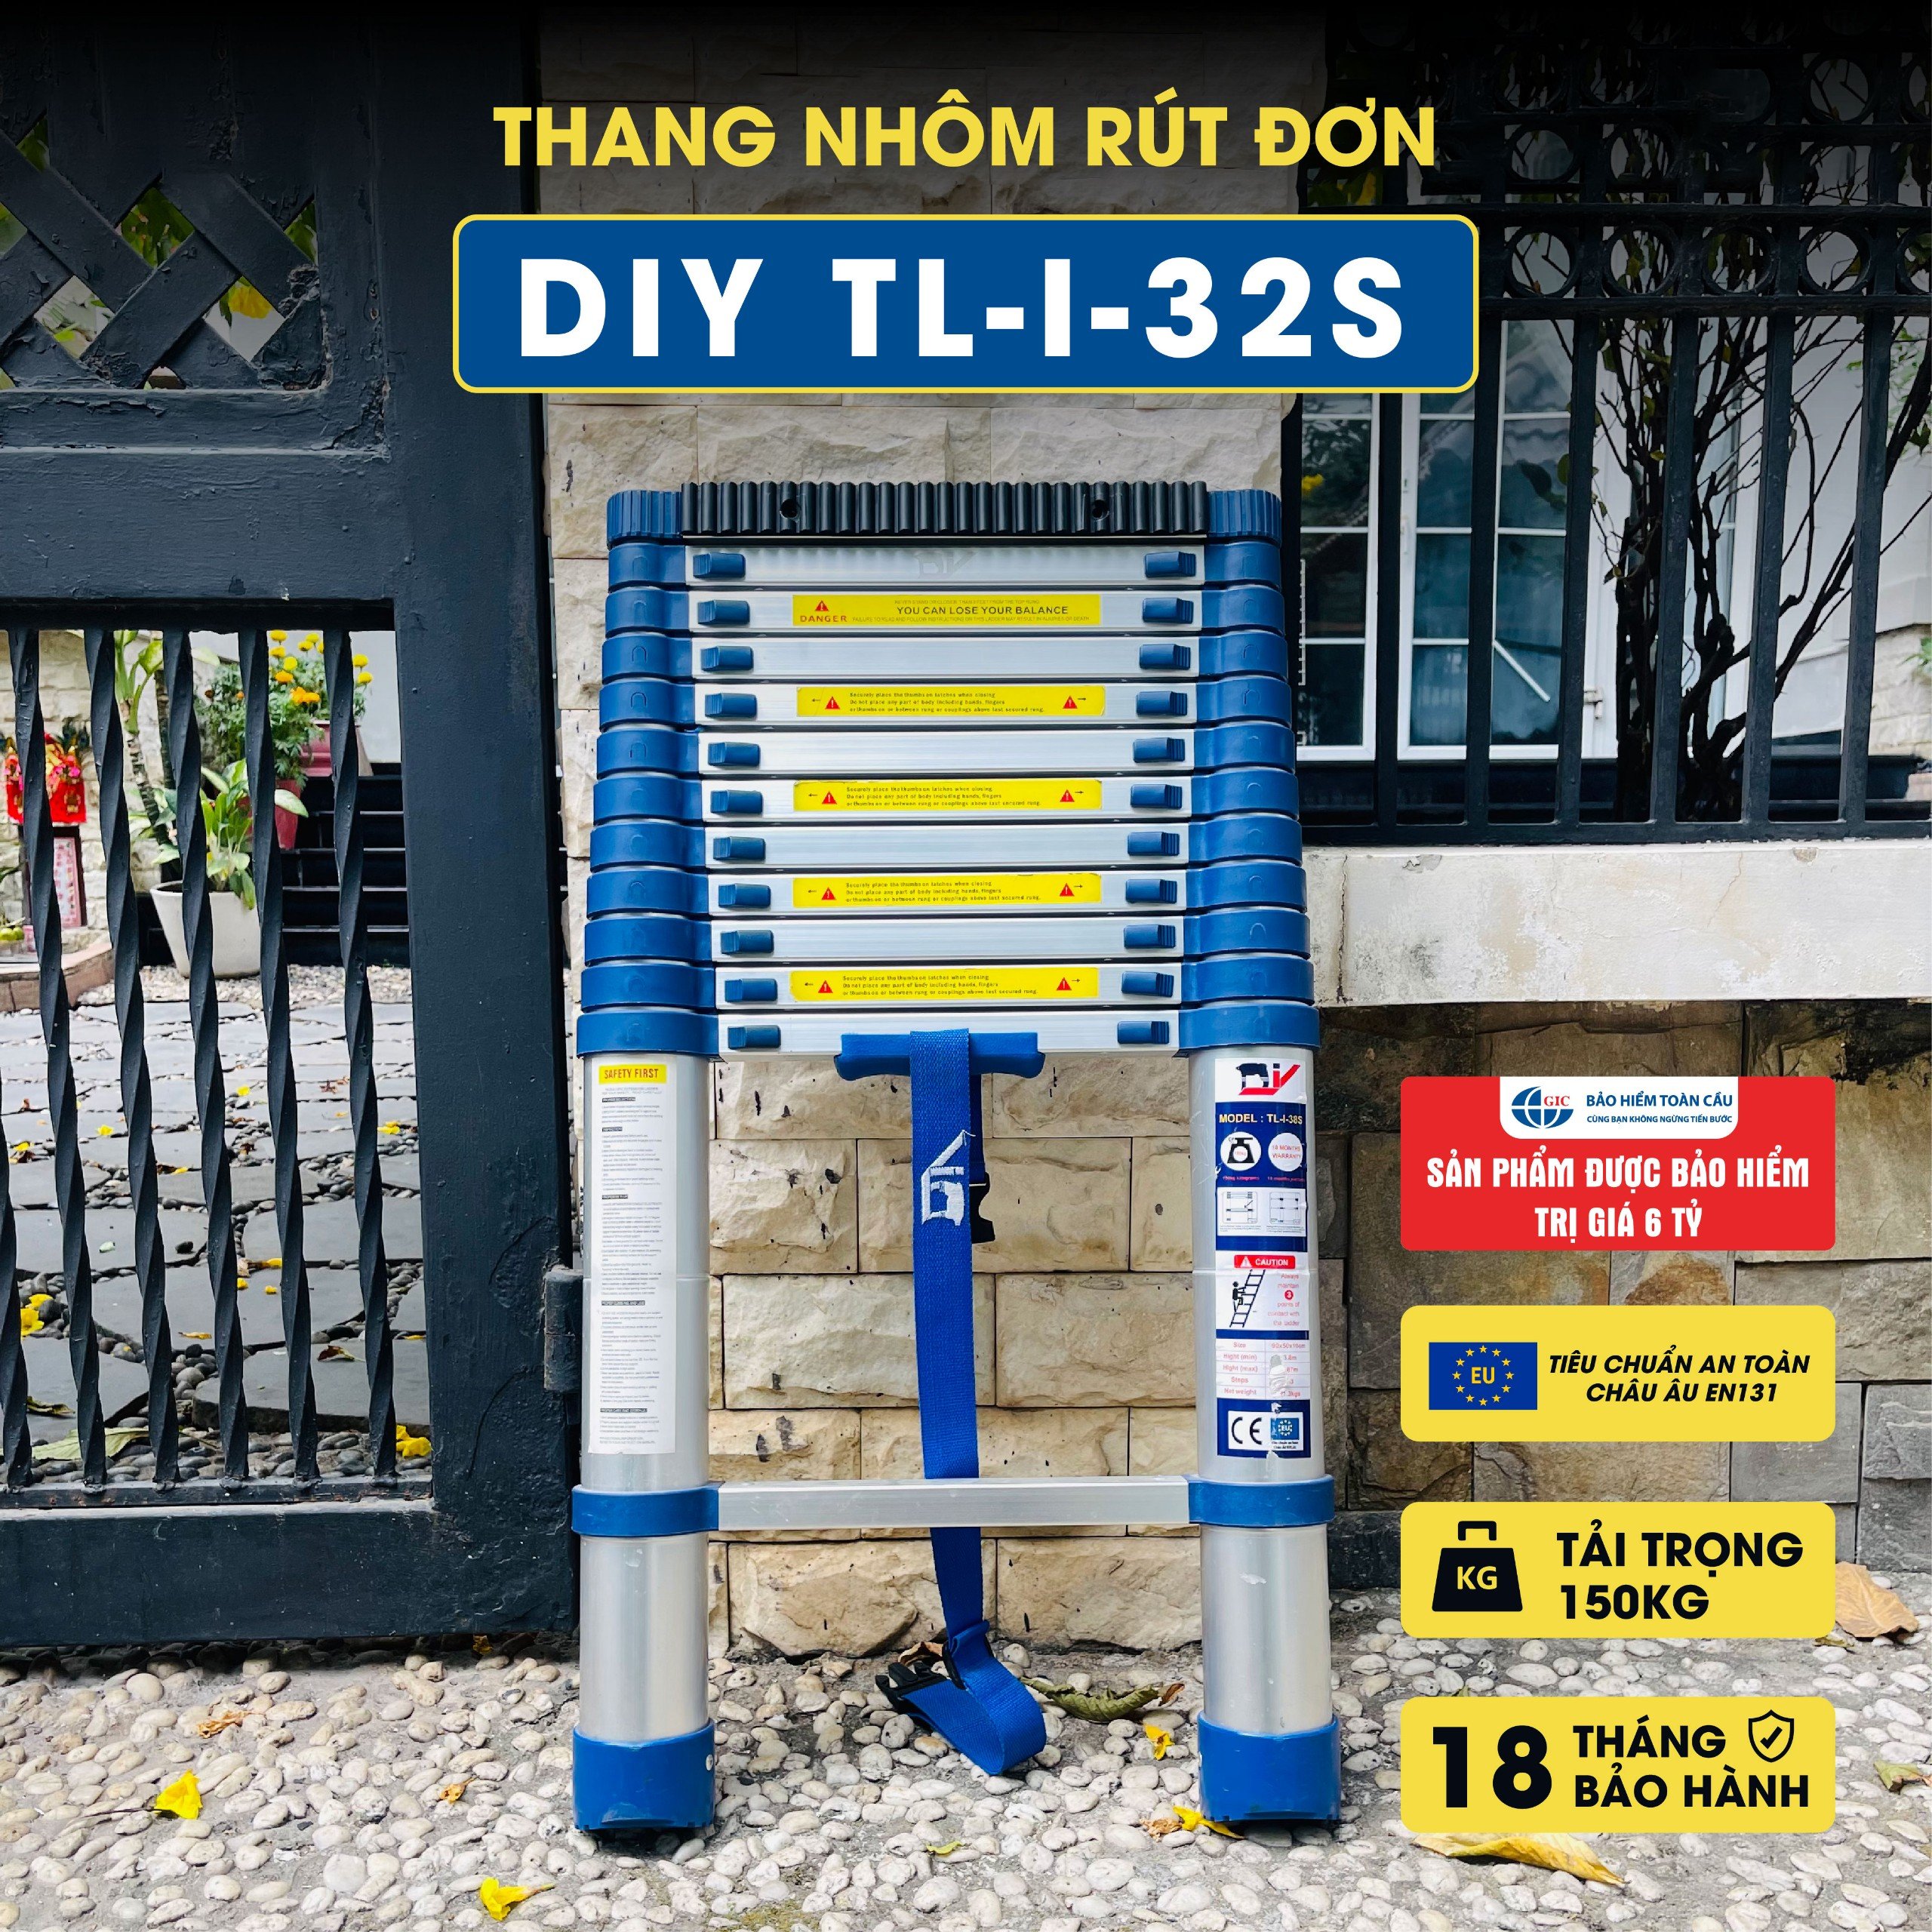 Thang nhôm rút đơn cao cấp DIY TL-I-32S chiều cao sử dụng tối đa 3.2M